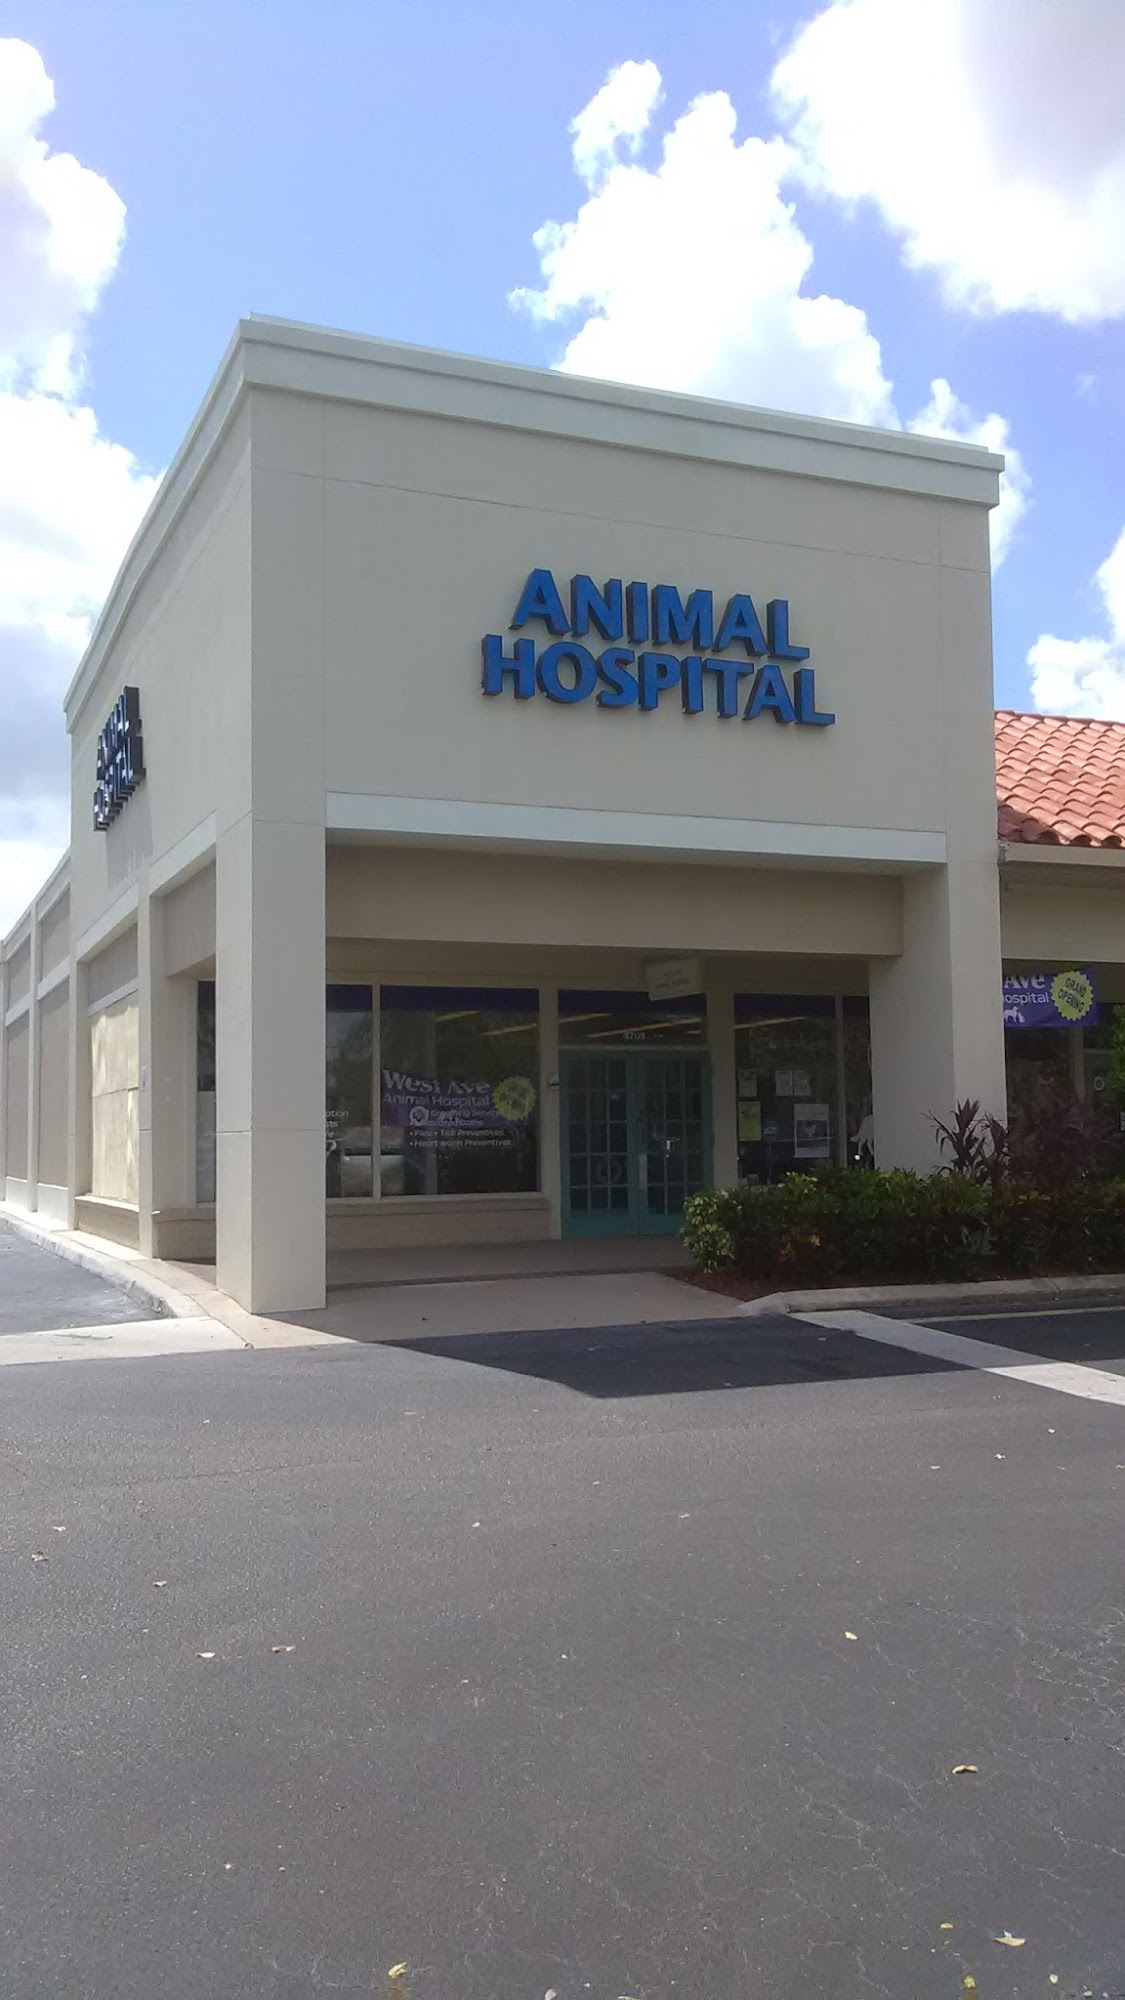 West Ave Animal Hospital